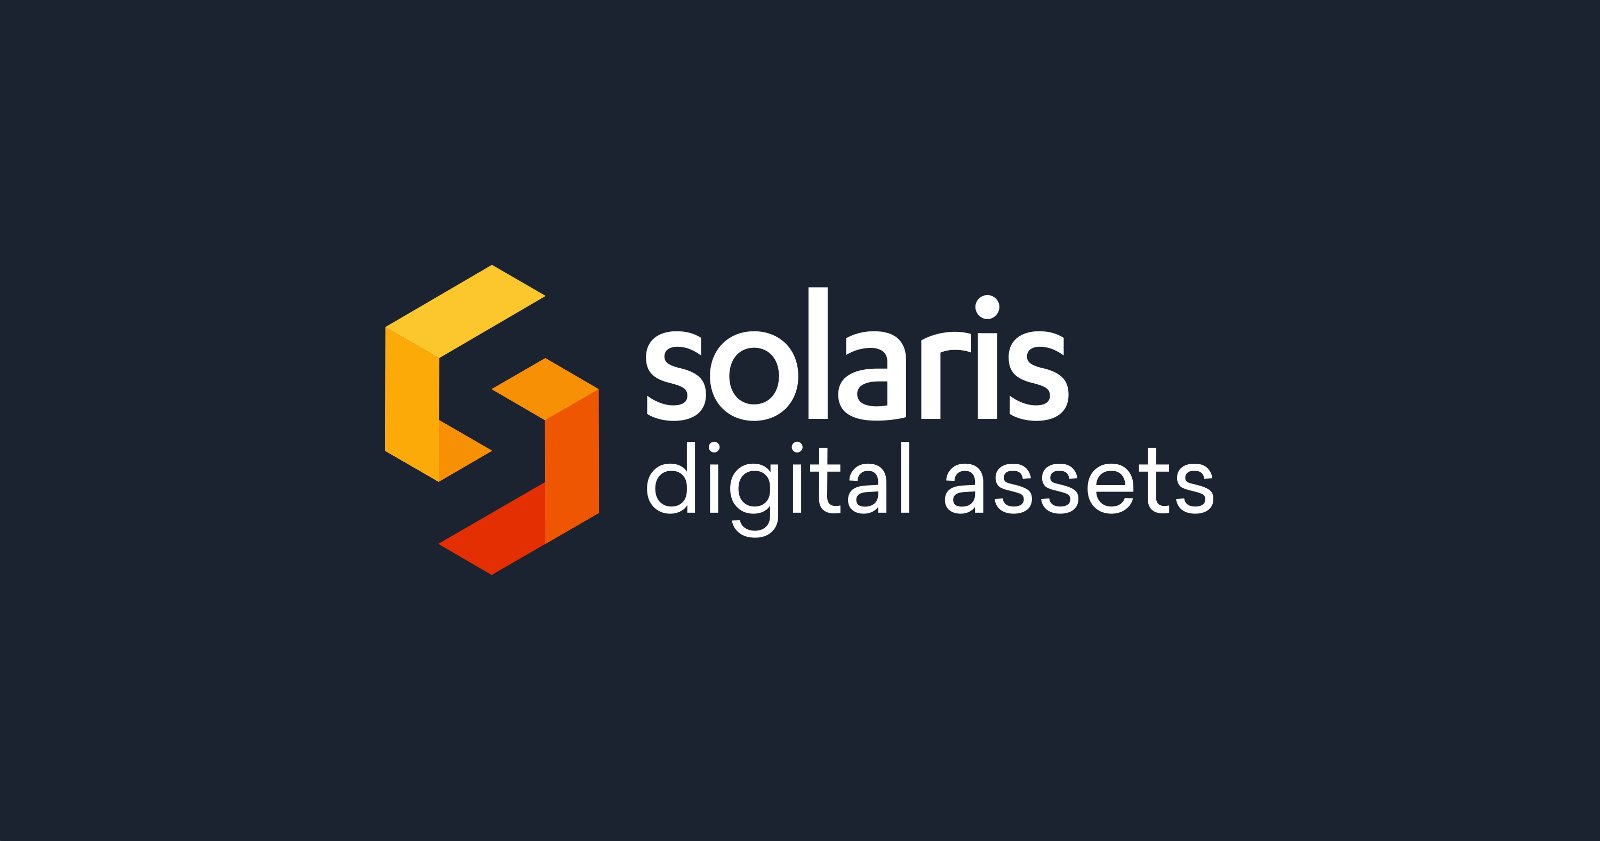 Die Berliner solarisBank will sich ganz auf Dienstleistungen rund um Bitcoin und Digitale Assets spezialisieren.